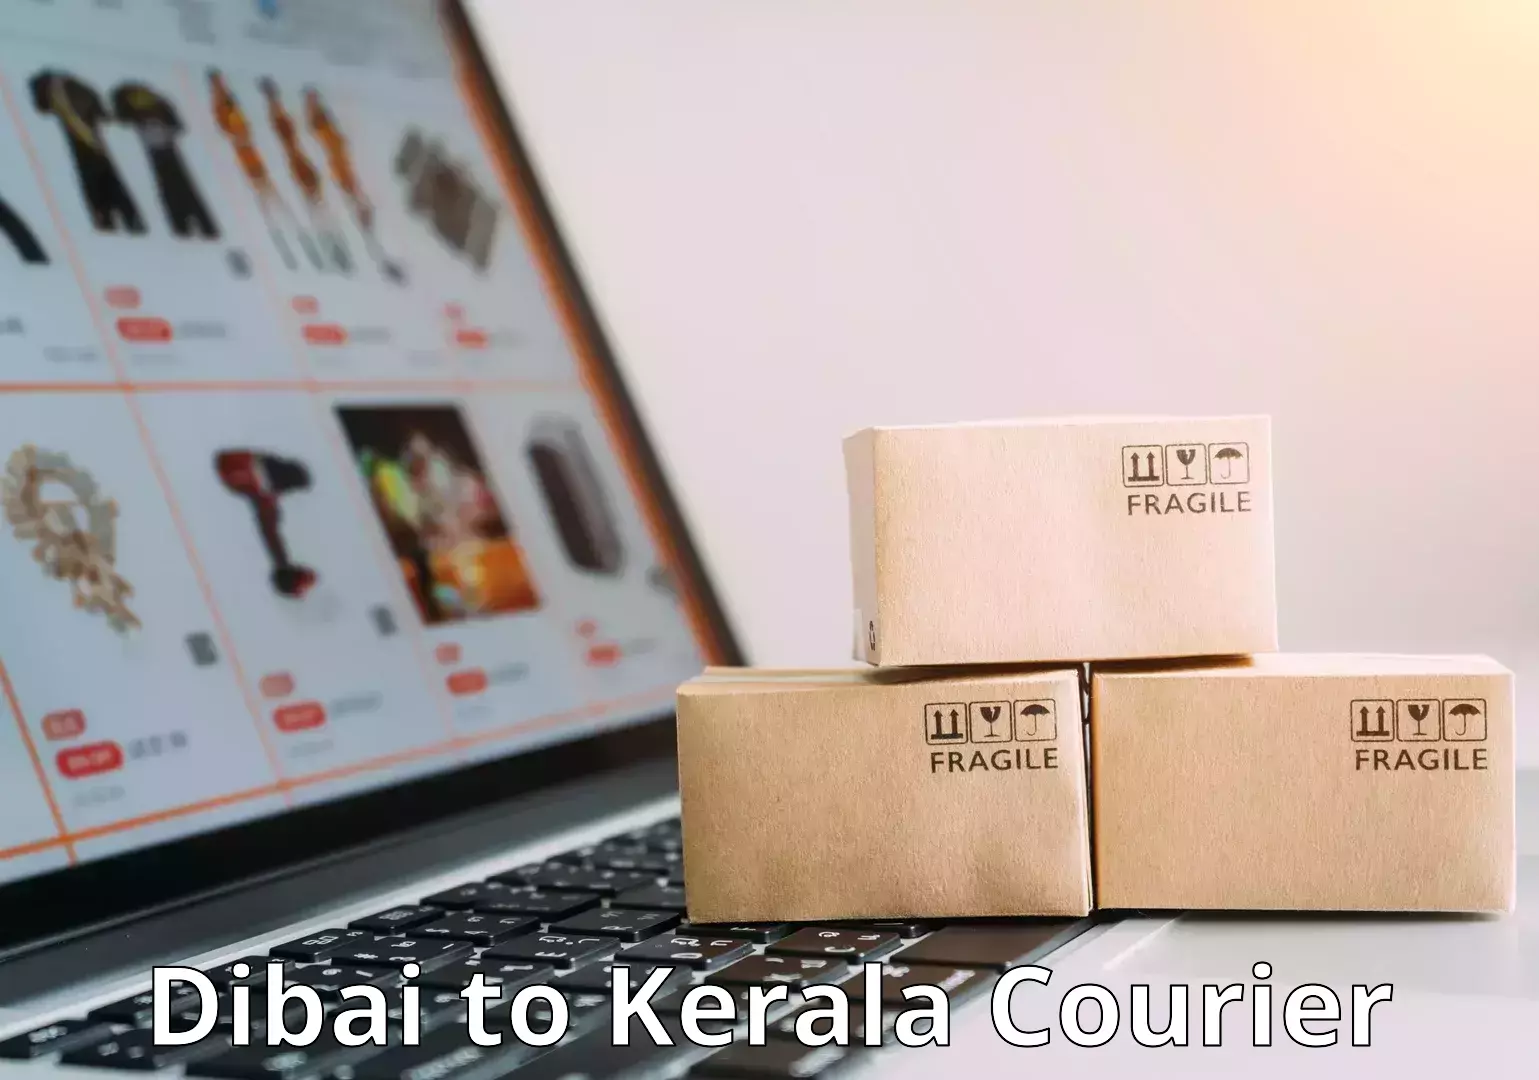 Luggage transport consultancy Dibai to Kerala